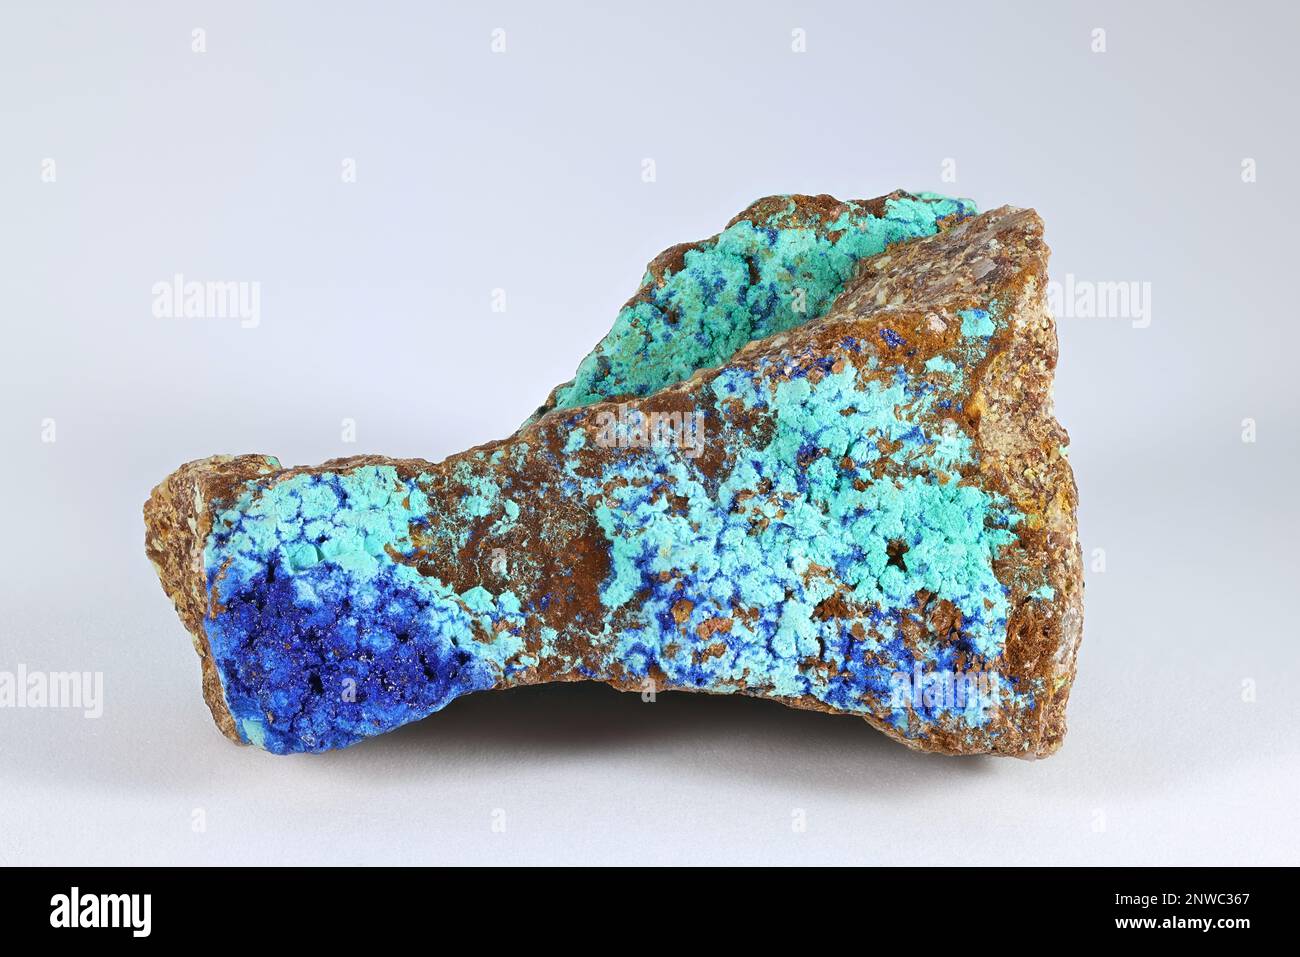 Azurit ist ein weiches, tiefblaues Kupfercarbonat-Mineral, auch bekannt als Chessylit, das in der Antike bekannt ist Stockfoto